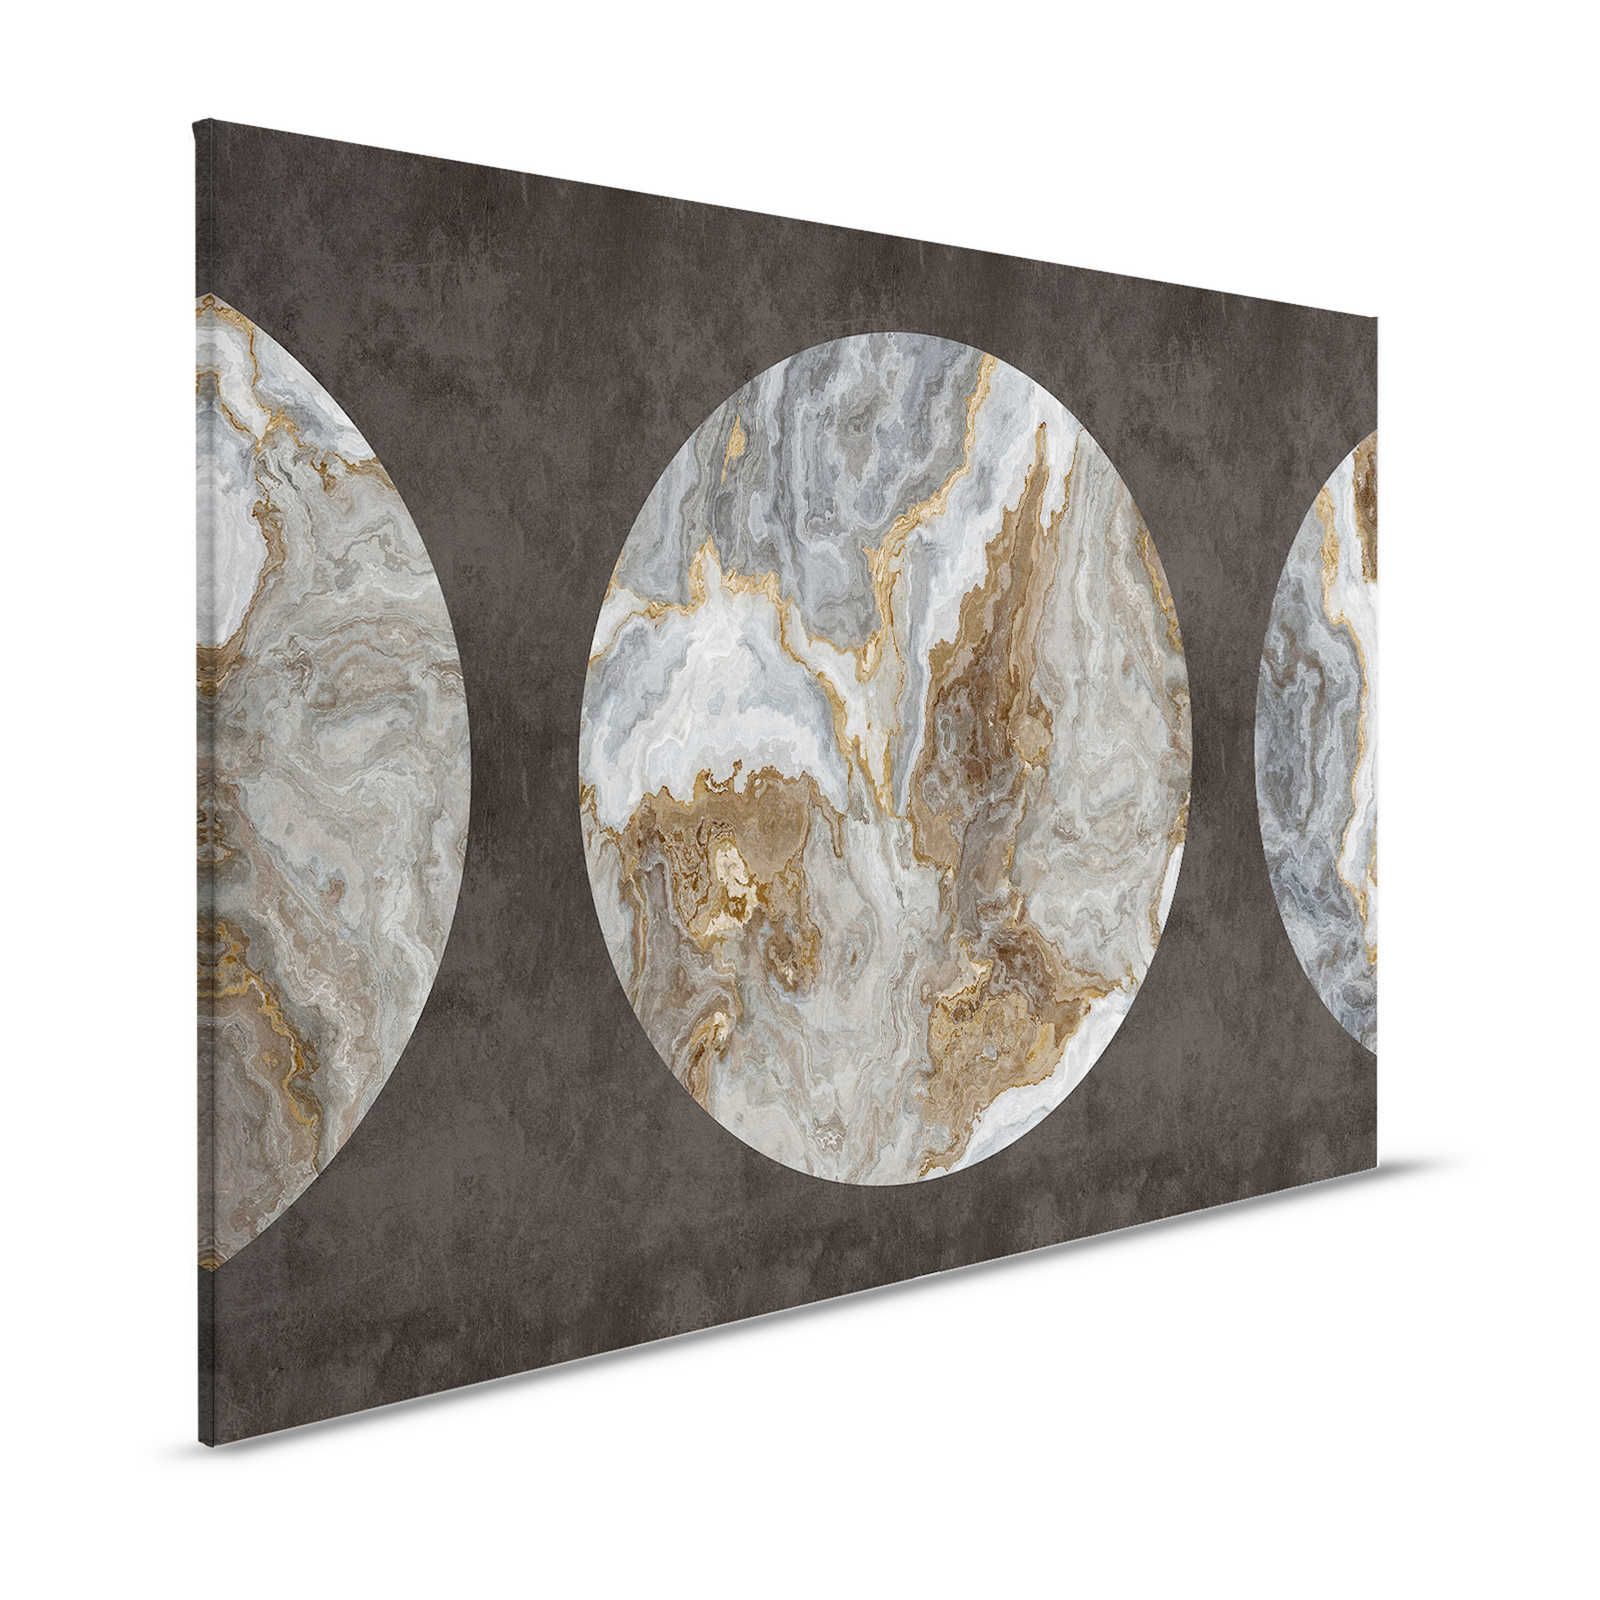 Luna 1 - Marbre toile cercle design & aspect plâtre noir - 1,20 m x 0,80 m
